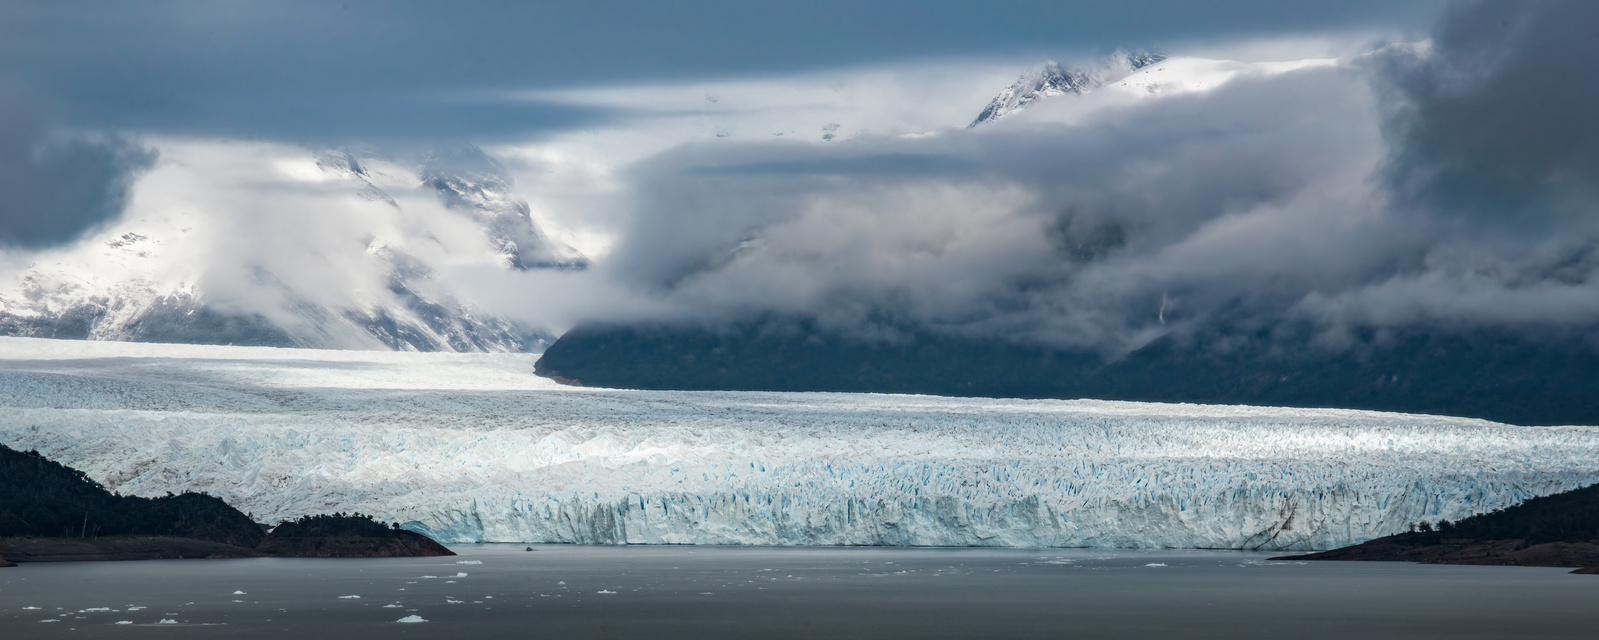 Perito Moreno Glacier in El Calafate, Argentina. Patagonia